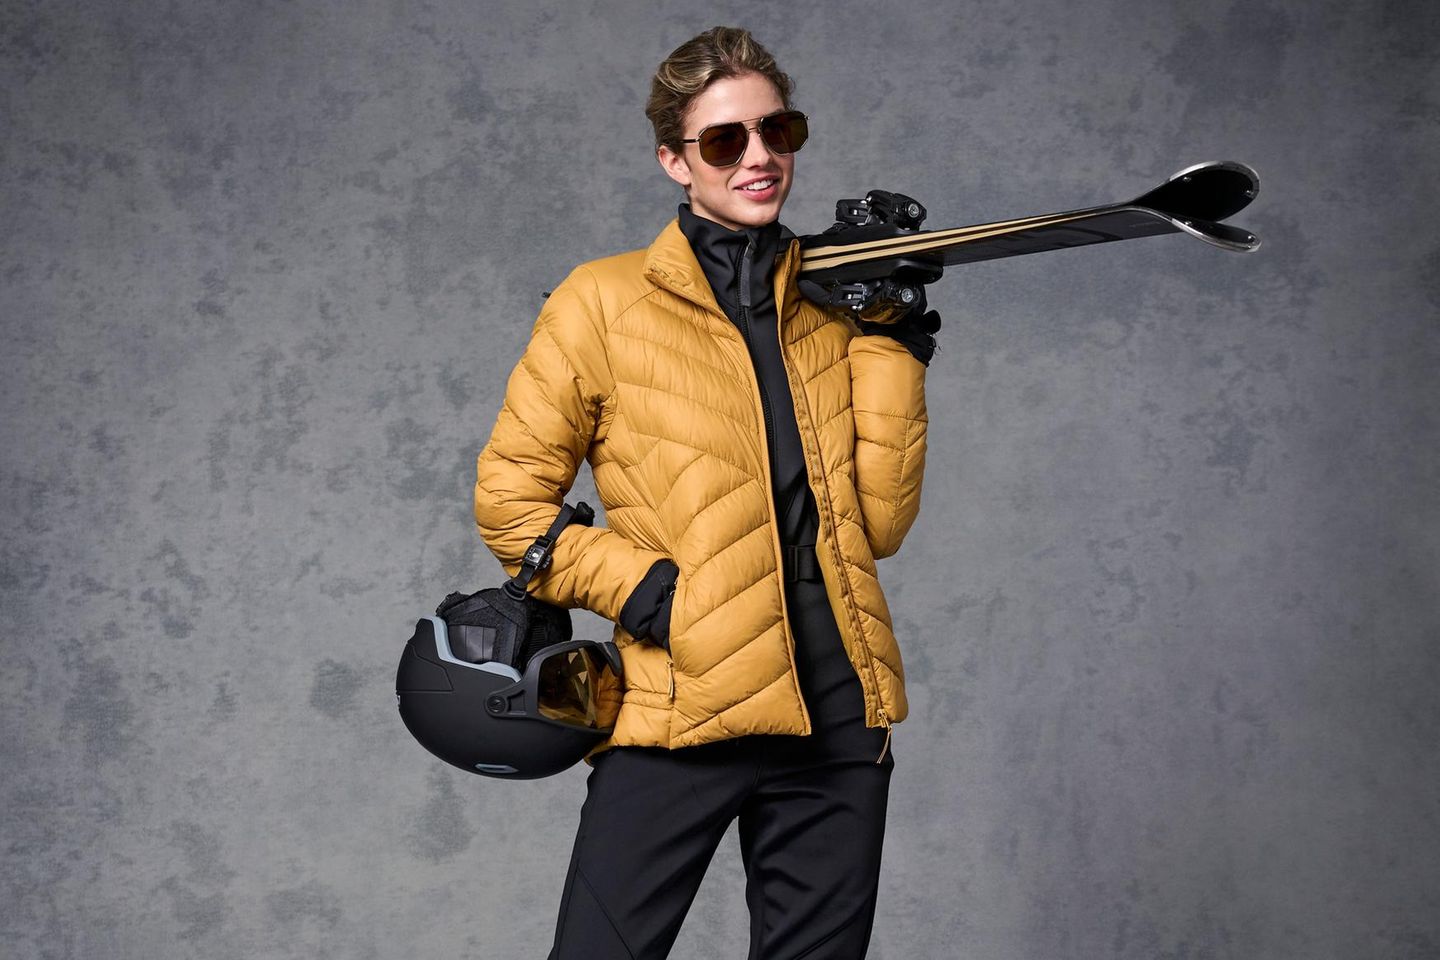 Guido, geht das so?: Stylische Looks zum Skifahren